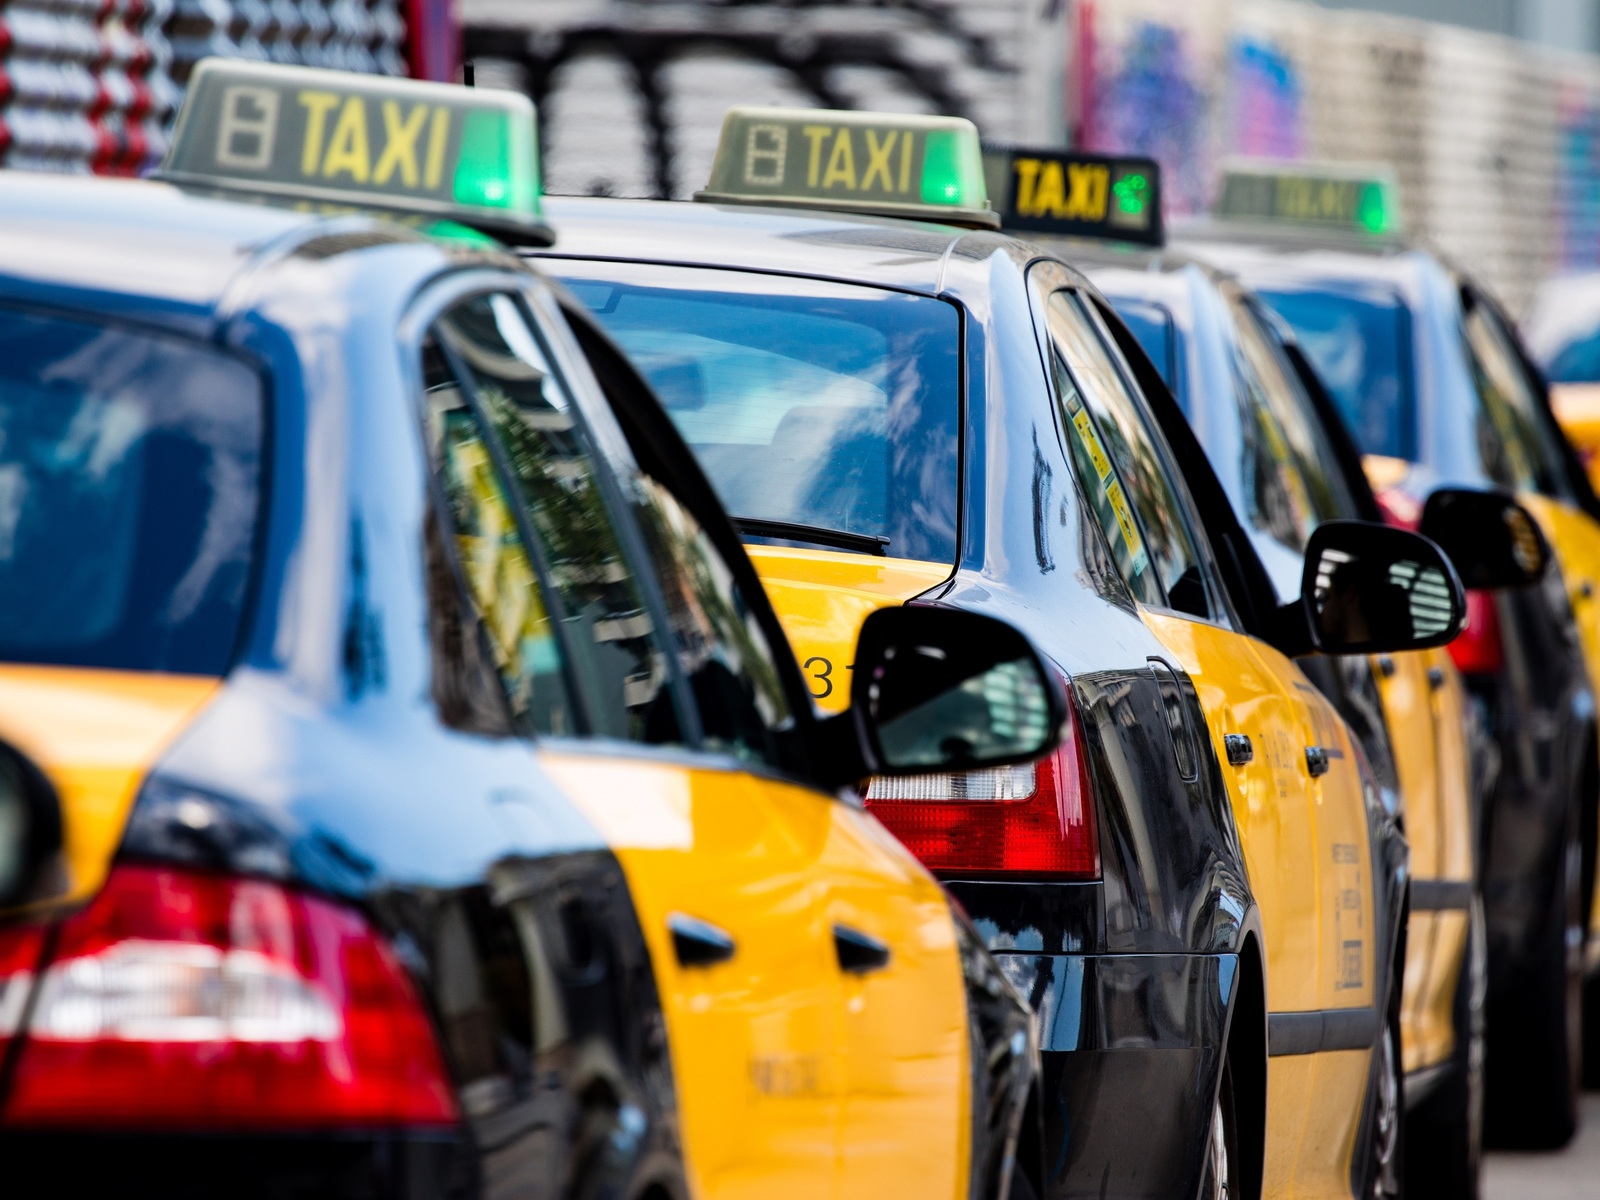 El taxi de Barcelona se manifiesta contra la ACCO tras la denuncia de Uber